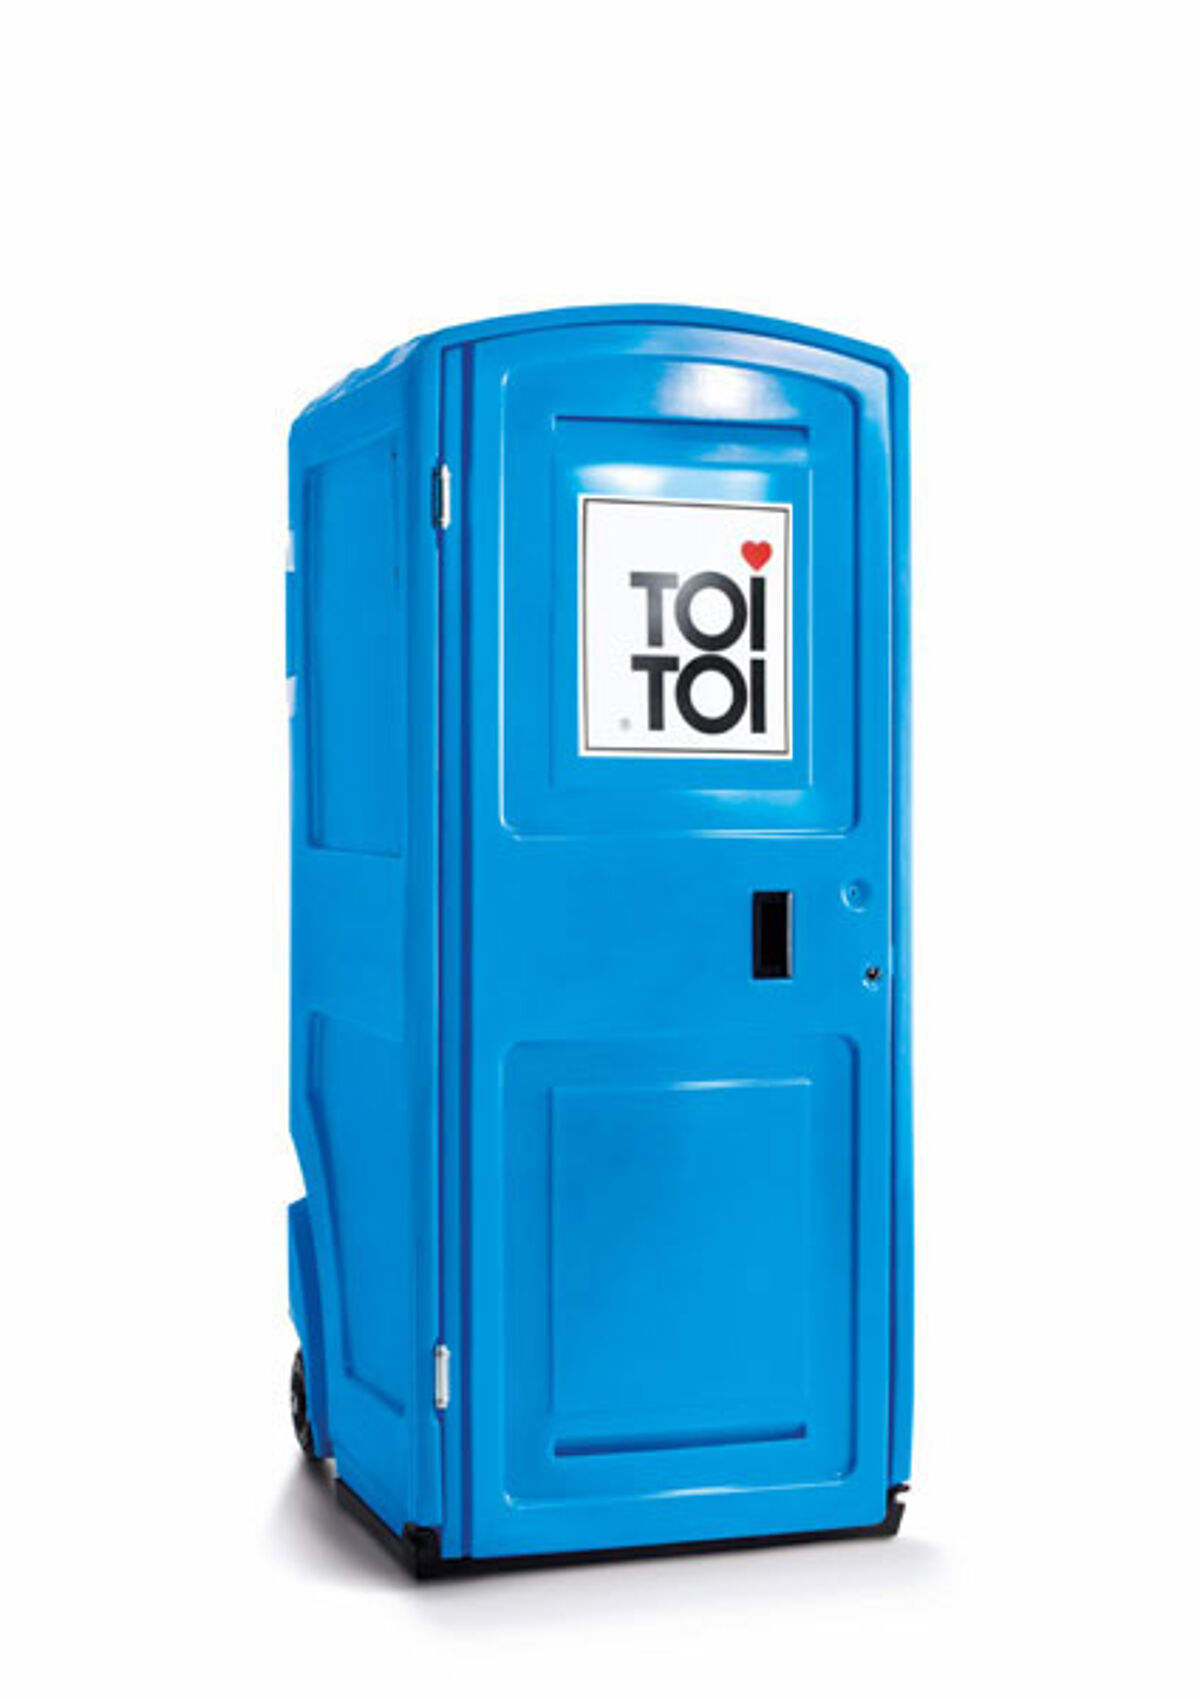 TOI® FRESH Portable toilet - TOI TOI SANITARIOS MOVILES, S.A.